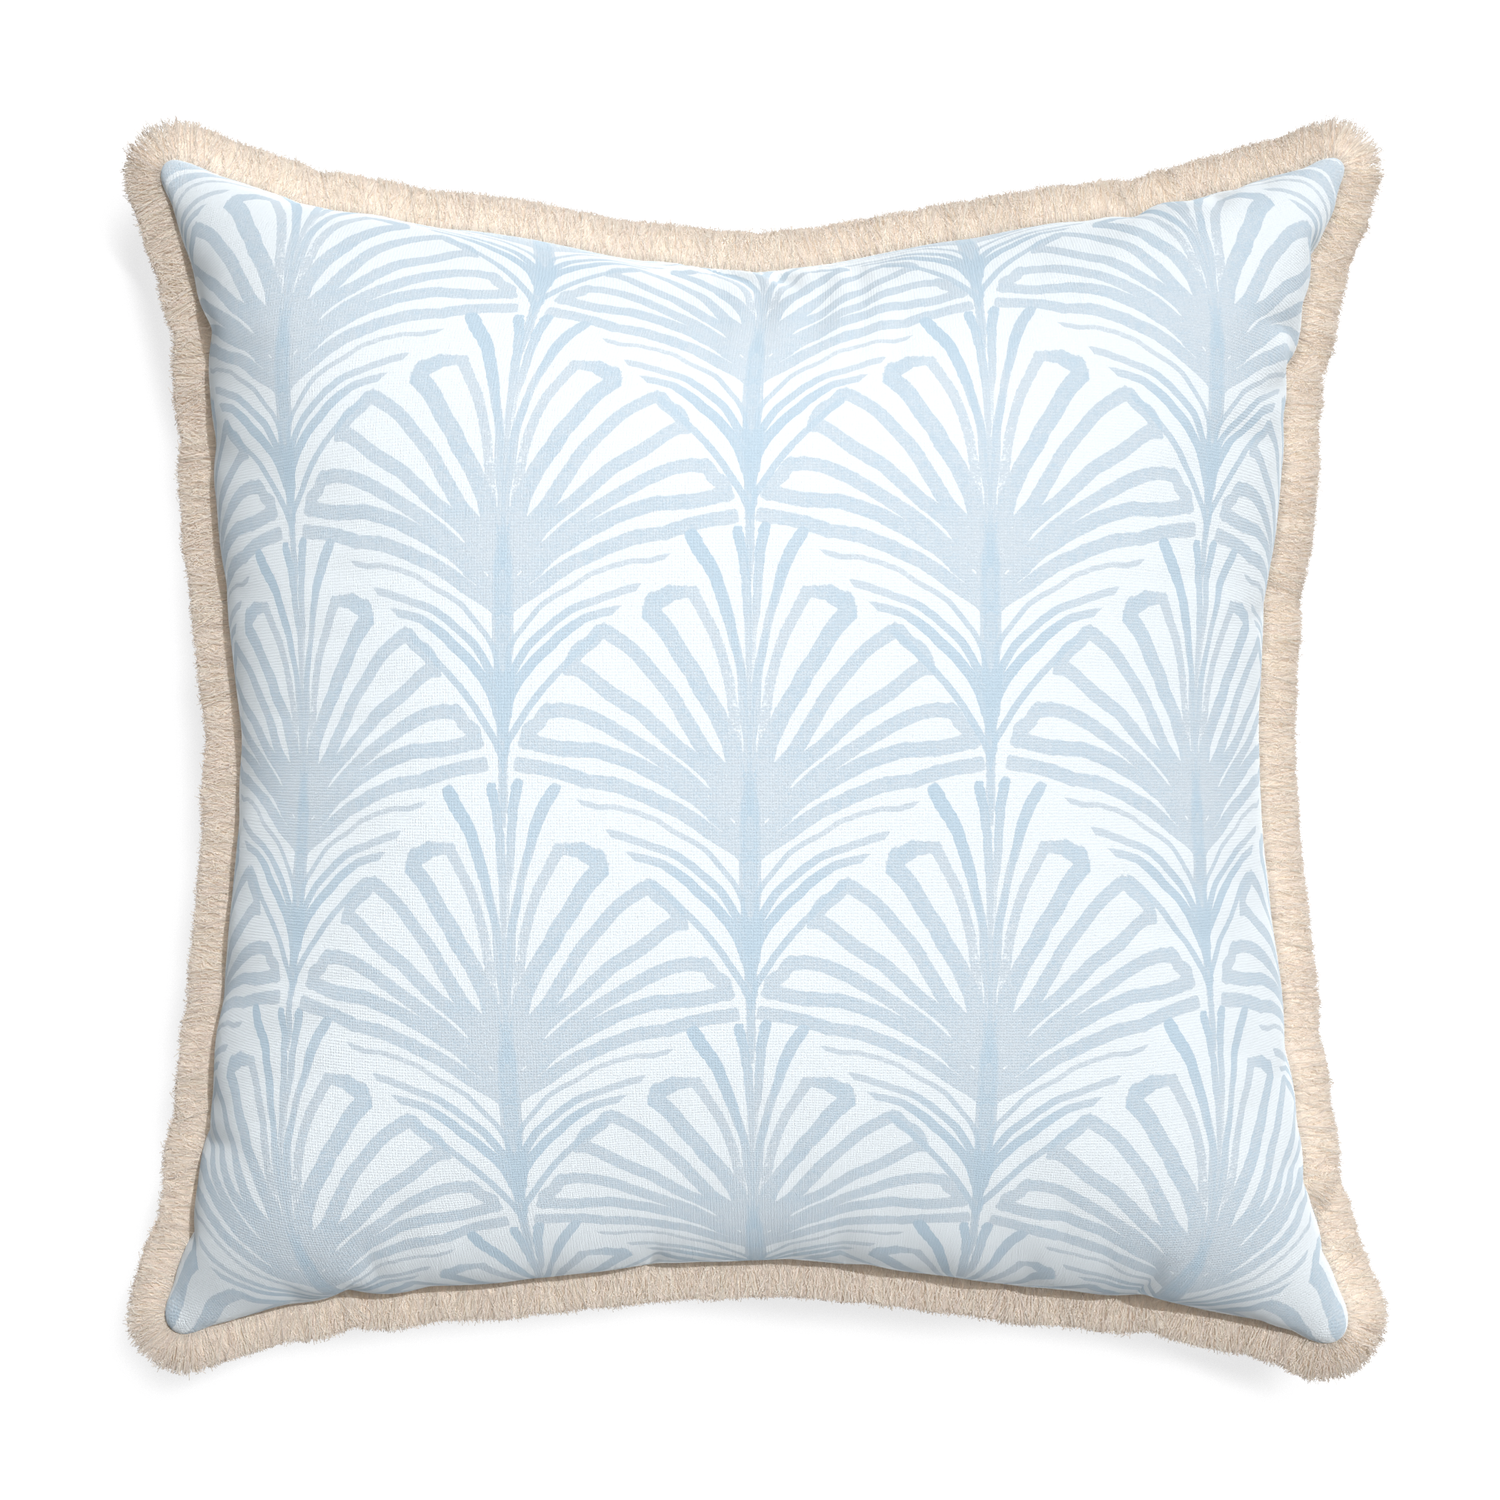 Euro-sham suzy sky custom pillow with cream fringe on white background